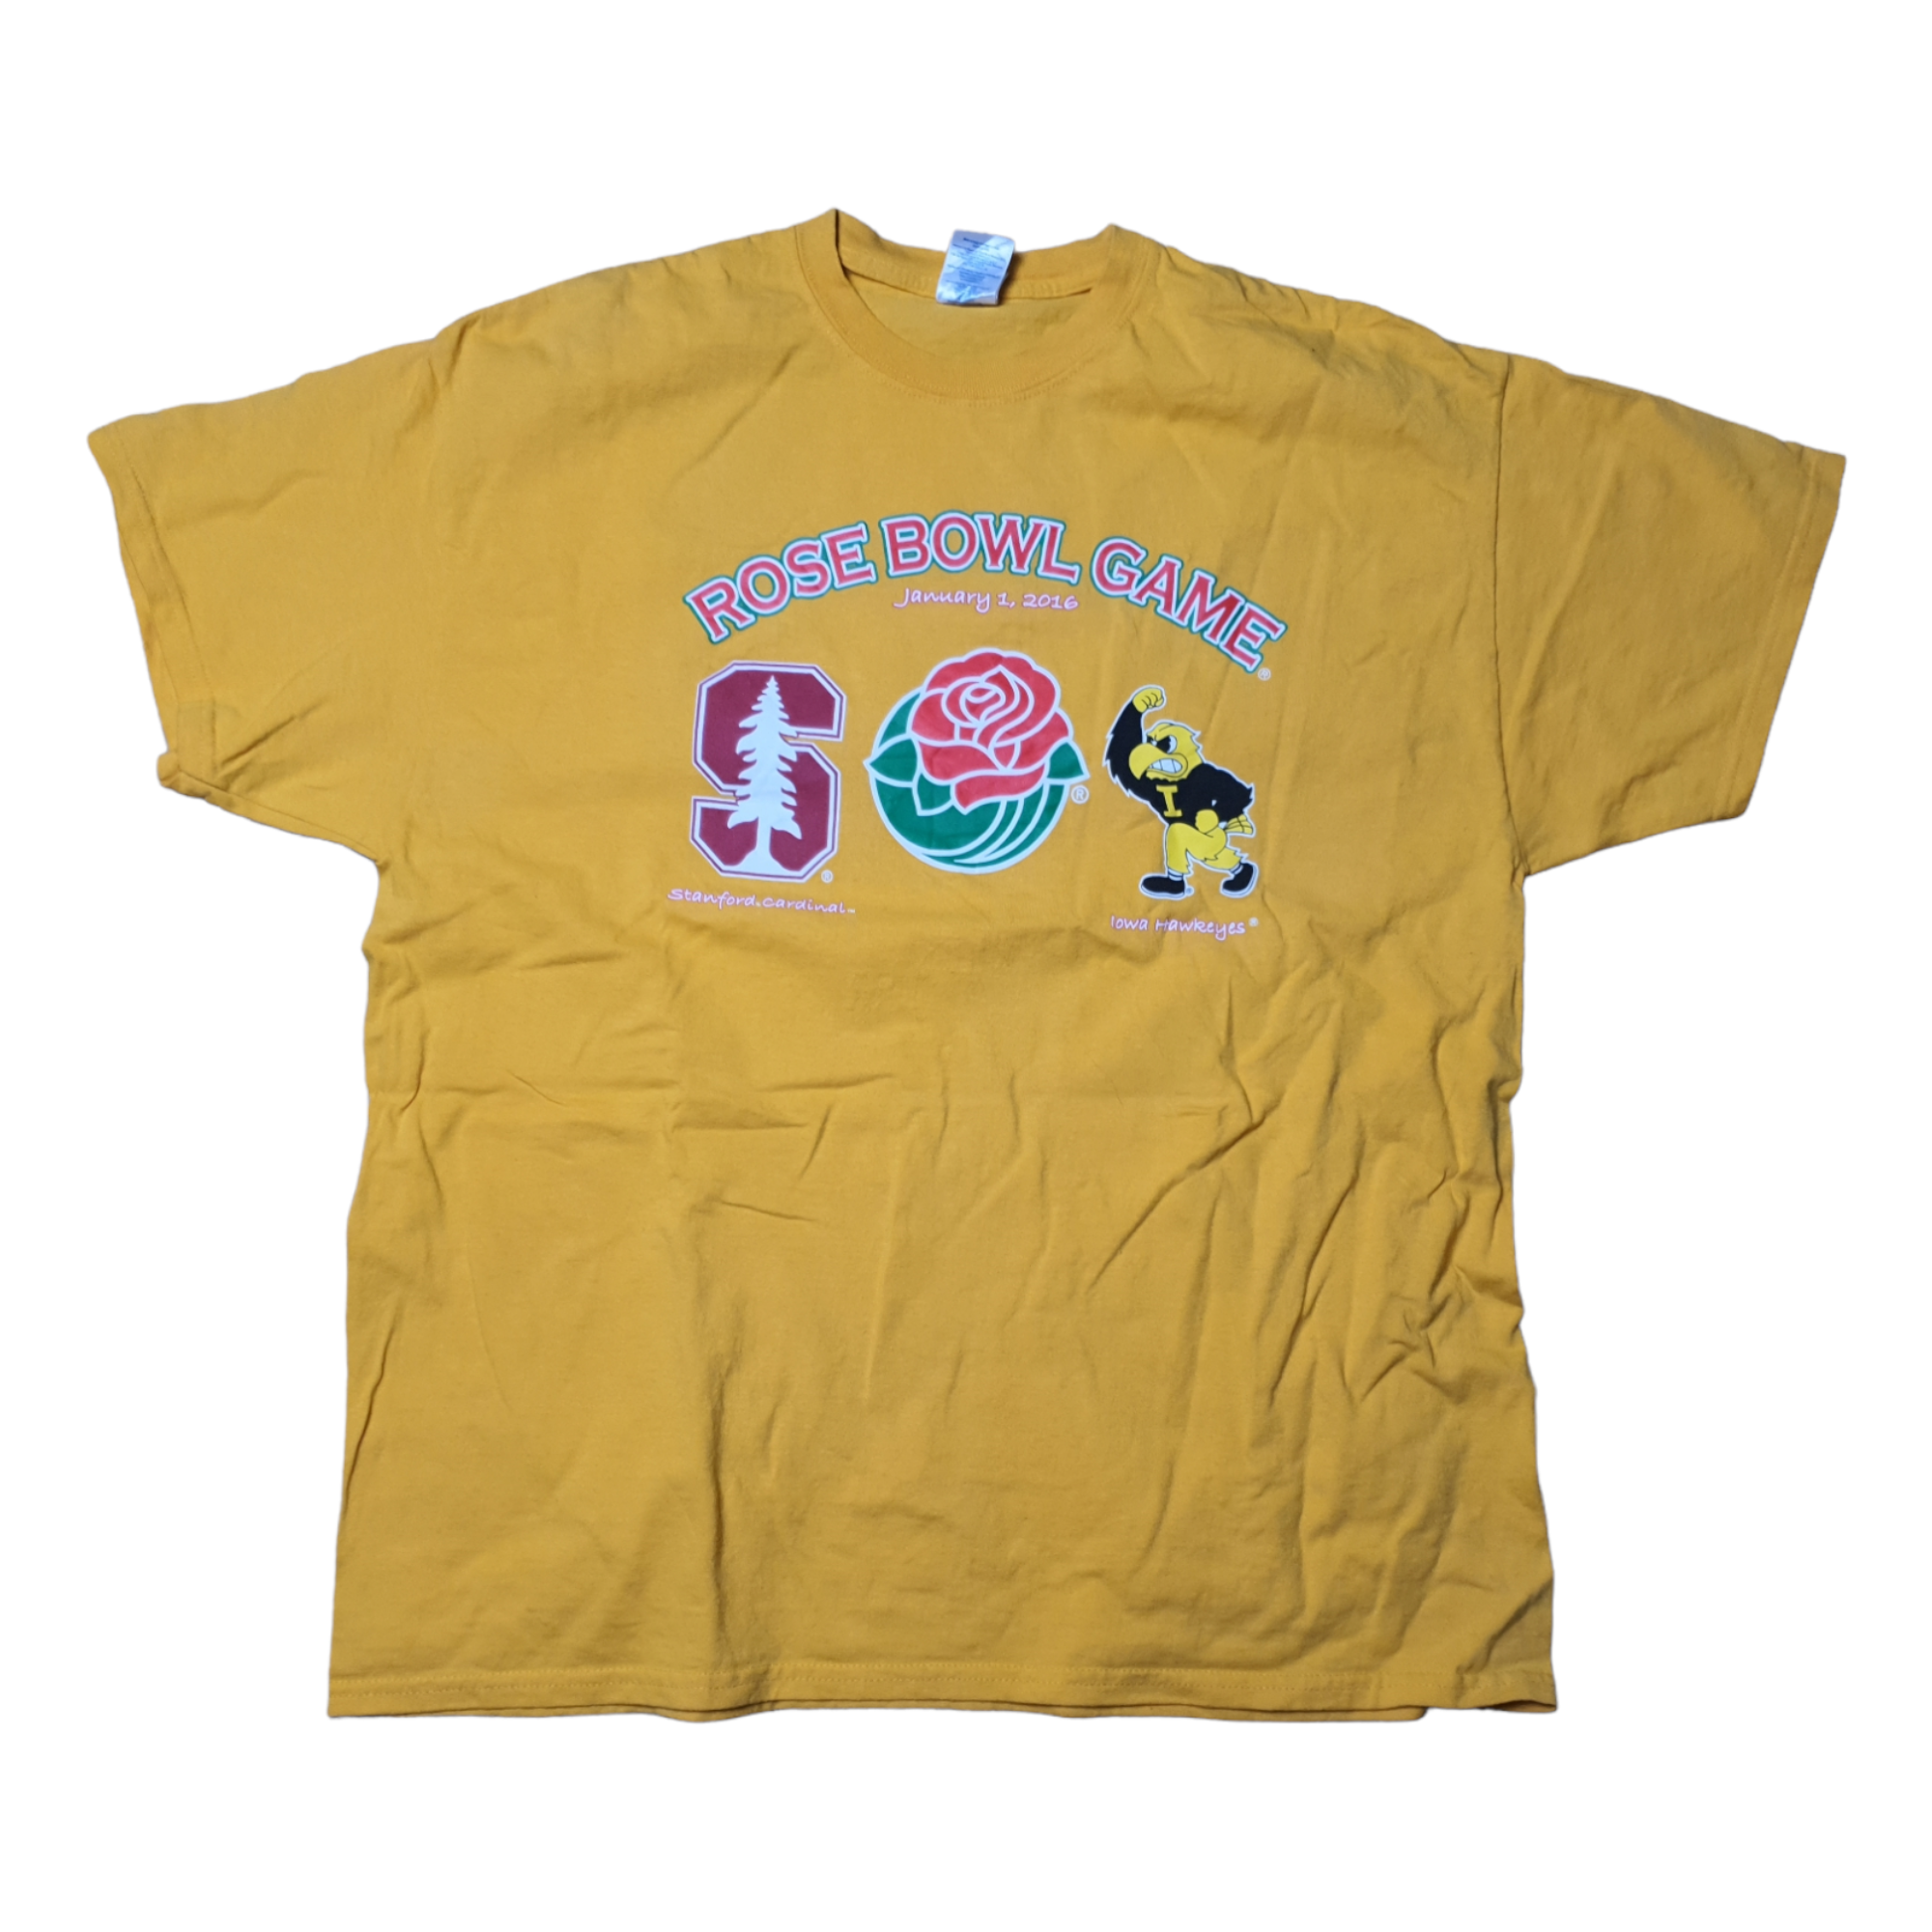 [M] Gildan Rose Bowl Game T-Shirt